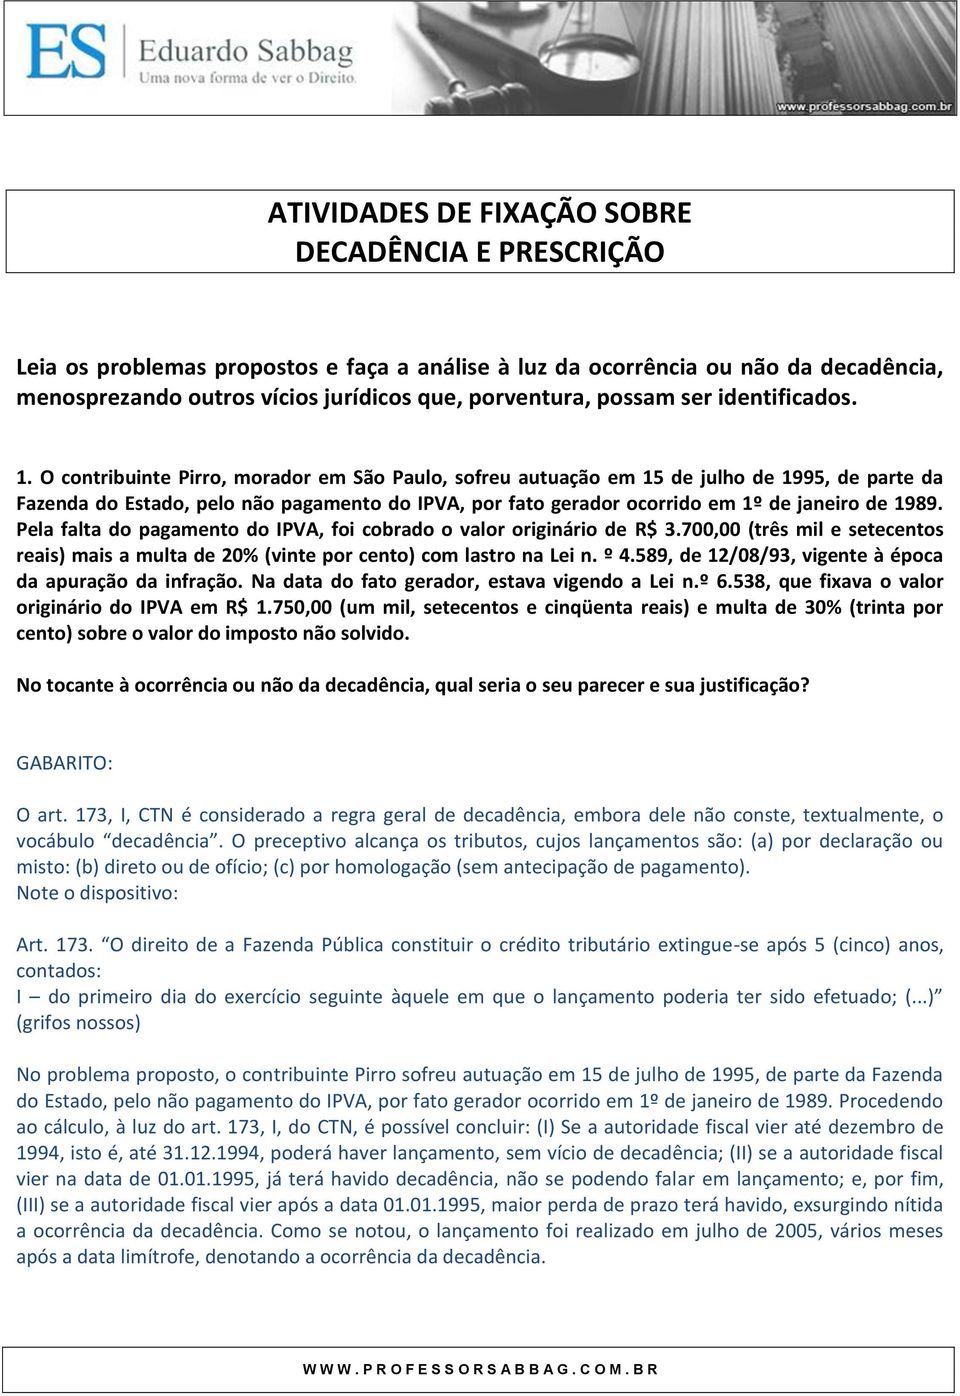 O contribuinte Pirro, morador em São Paulo, sofreu autuação em 15 de julho de 1995, de parte da Fazenda do Estado, pelo não pagamento do IPVA, por fato gerador ocorrido em 1º de janeiro de 1989.